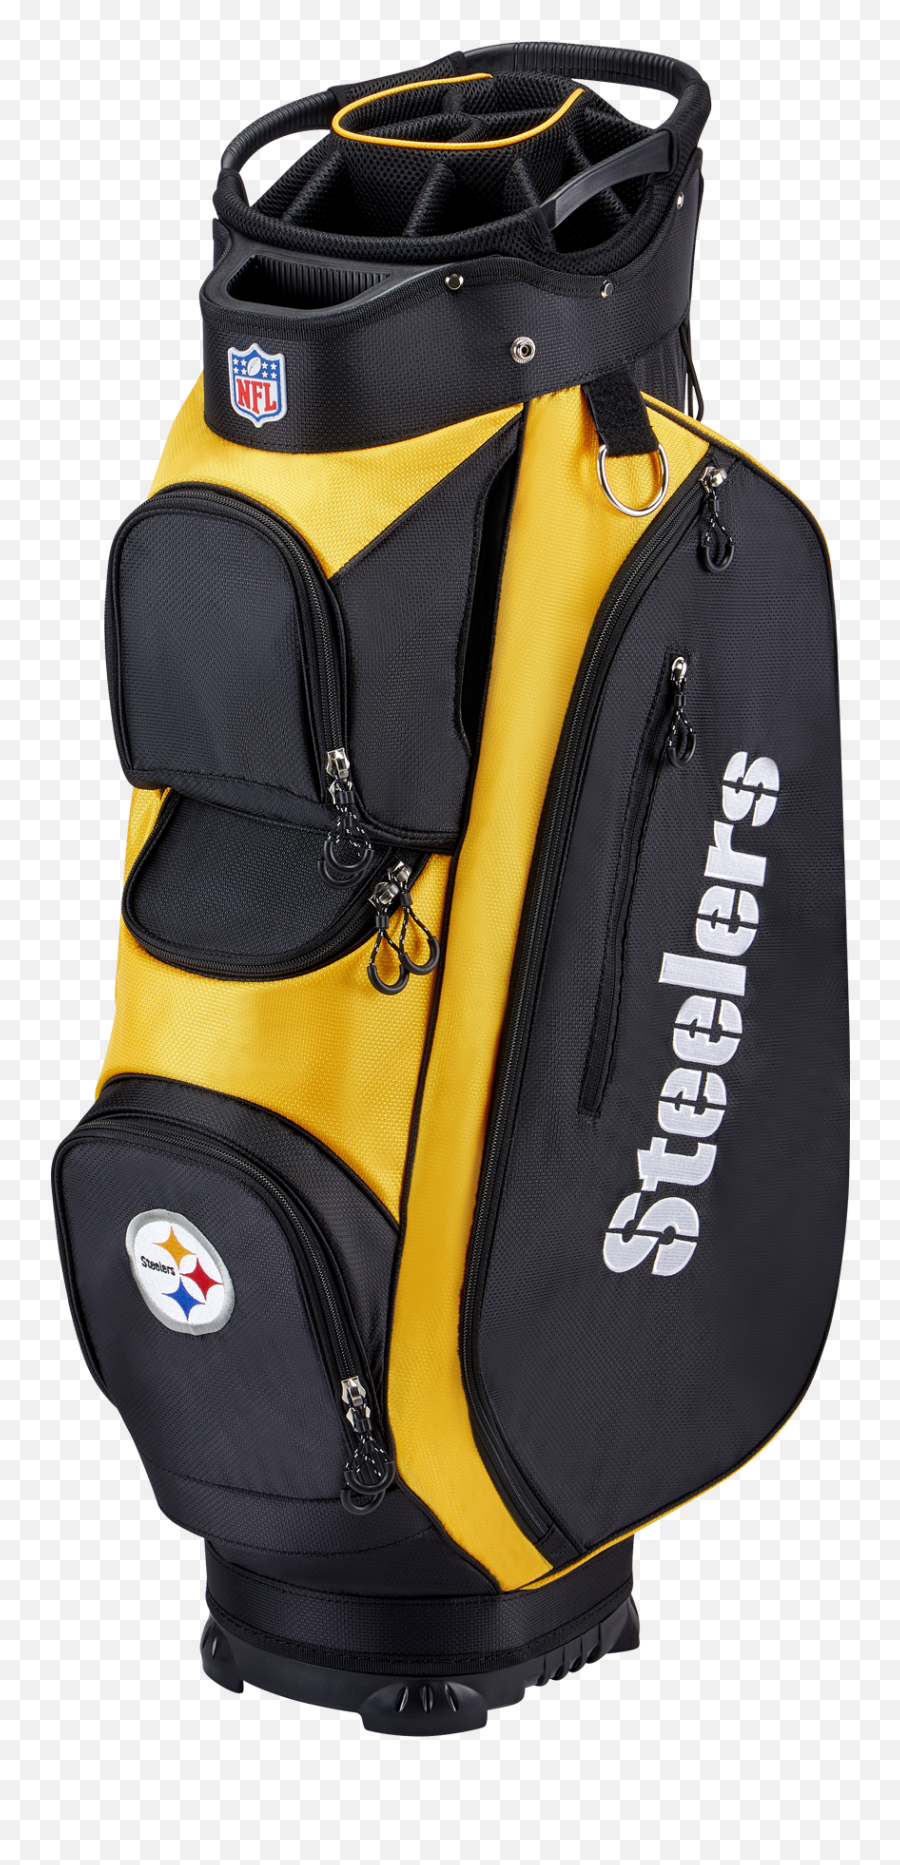 Wilson Nfl Cart Golf Bag Pittsburgh Steelers Emoji,Pittsburgh Steelers Png